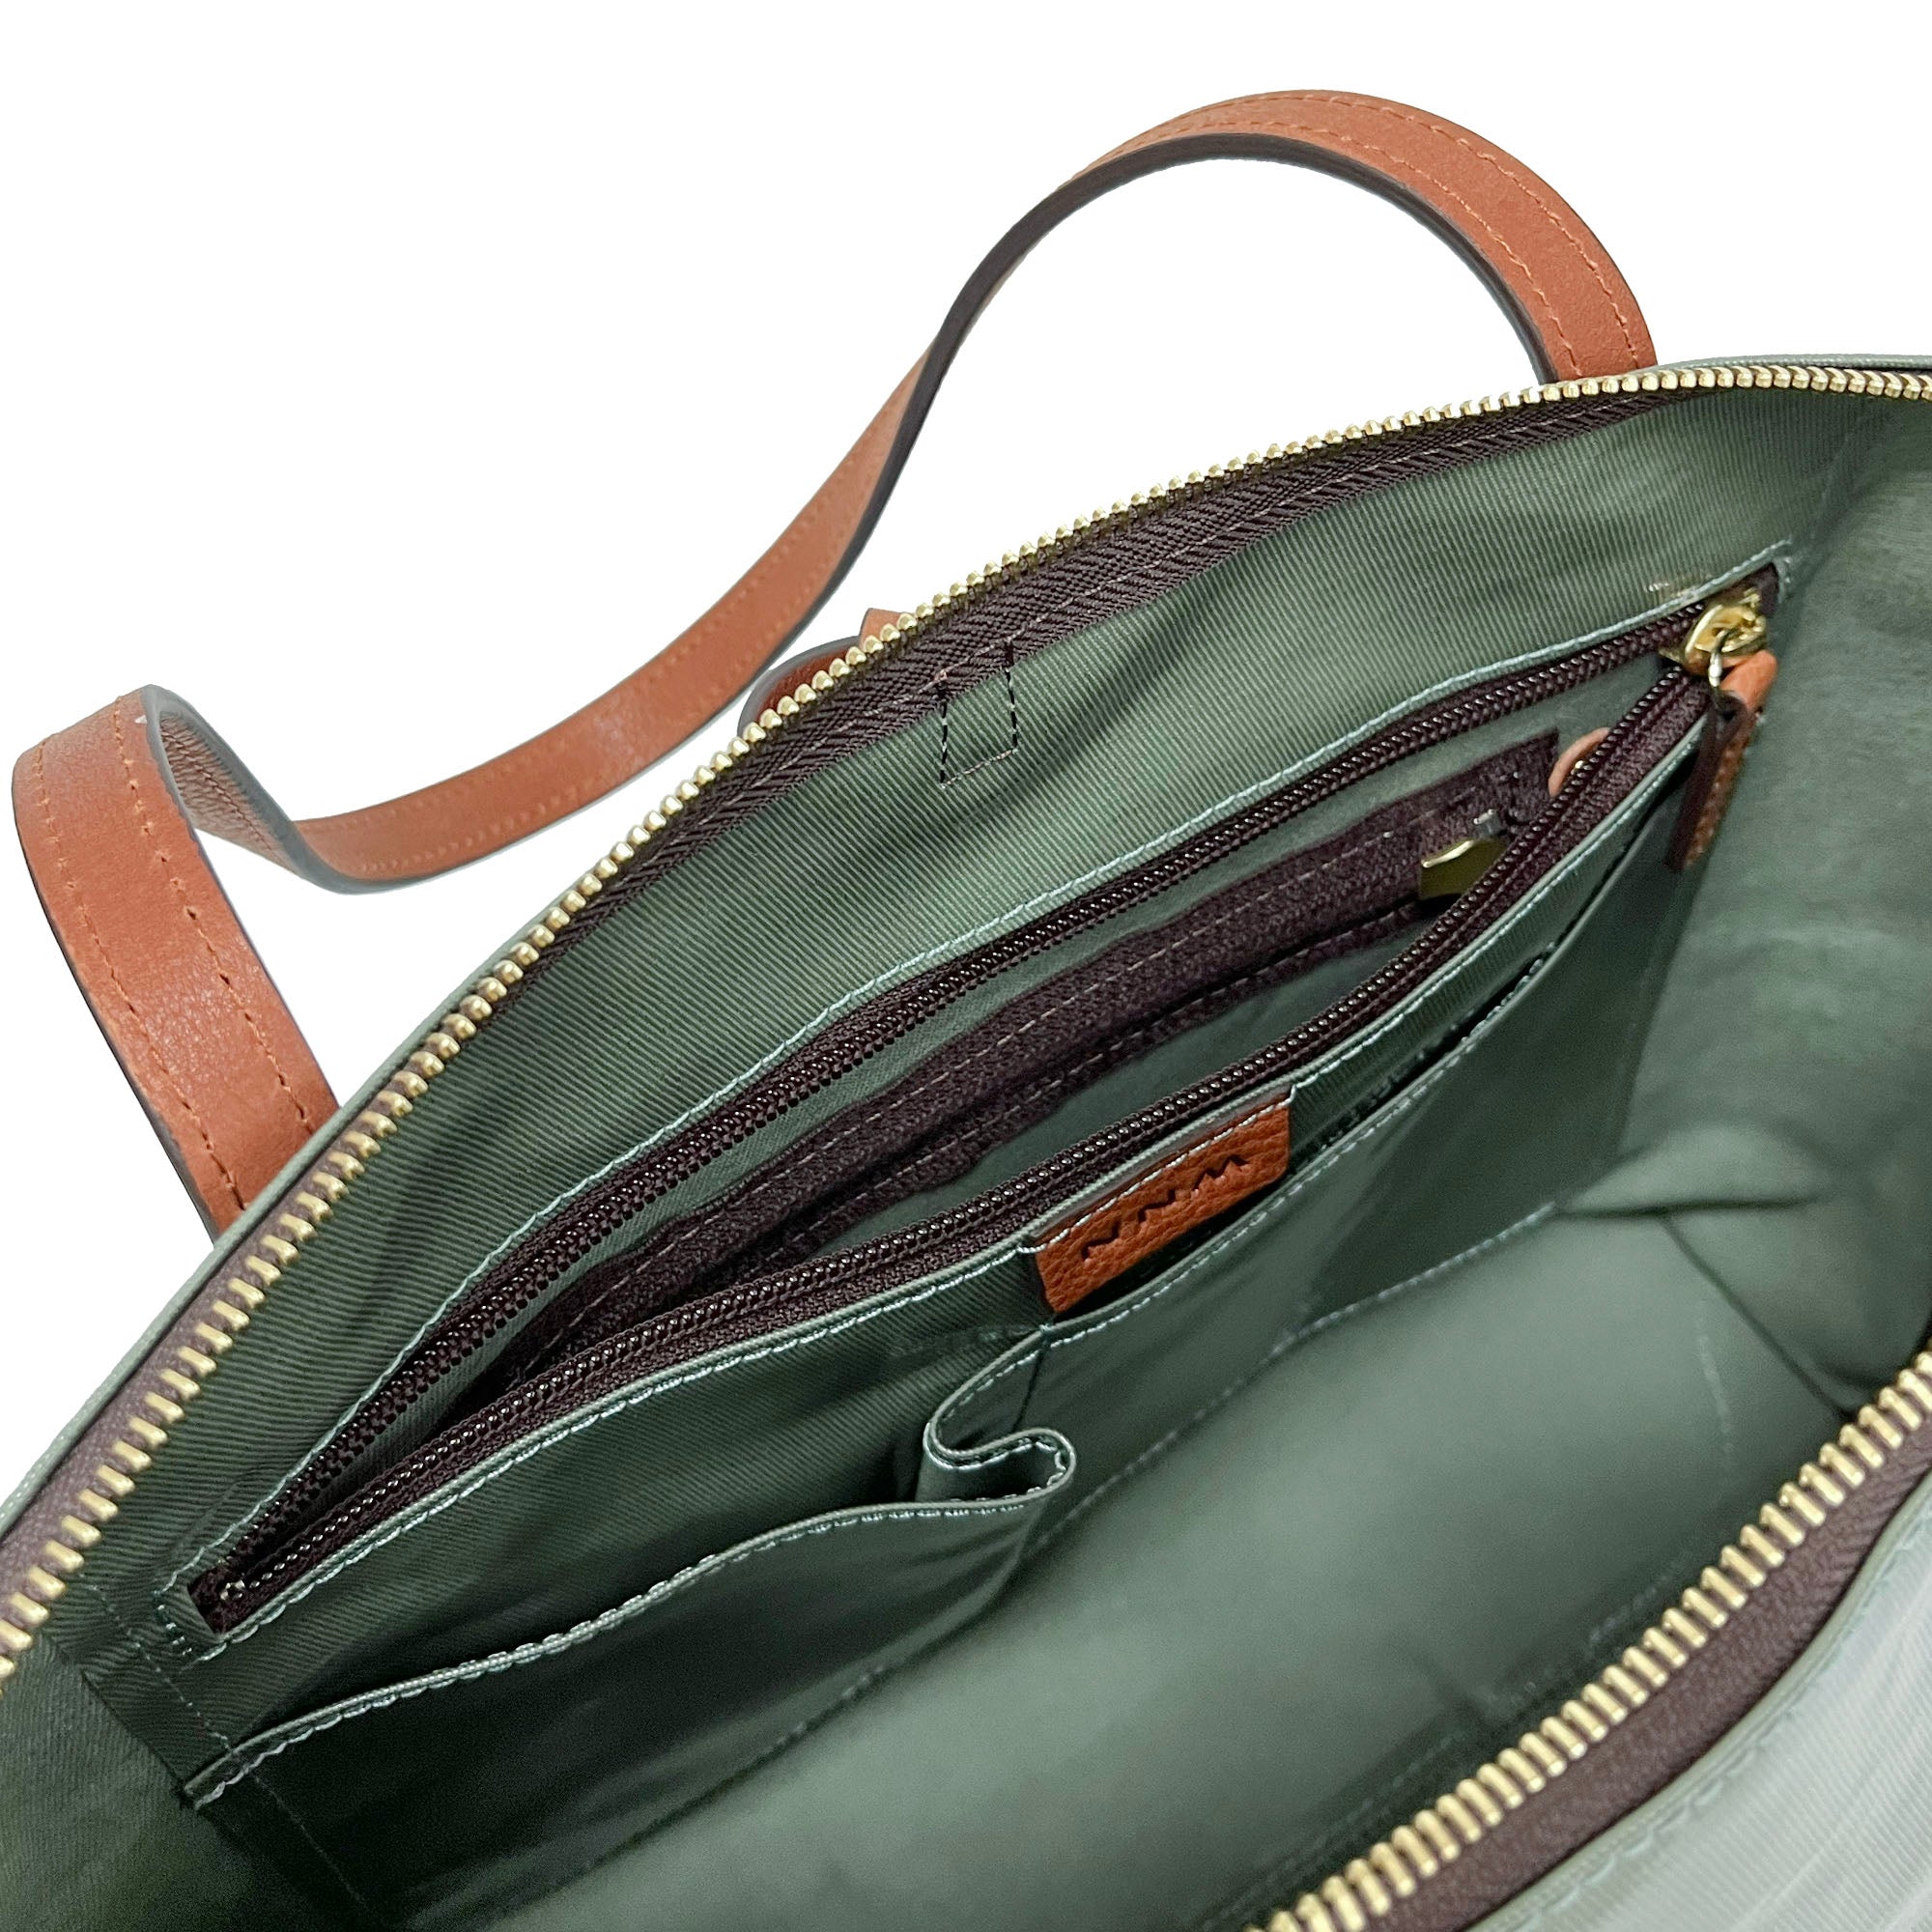 LIFE |  Waterproof Tote Bag (Sage Green)